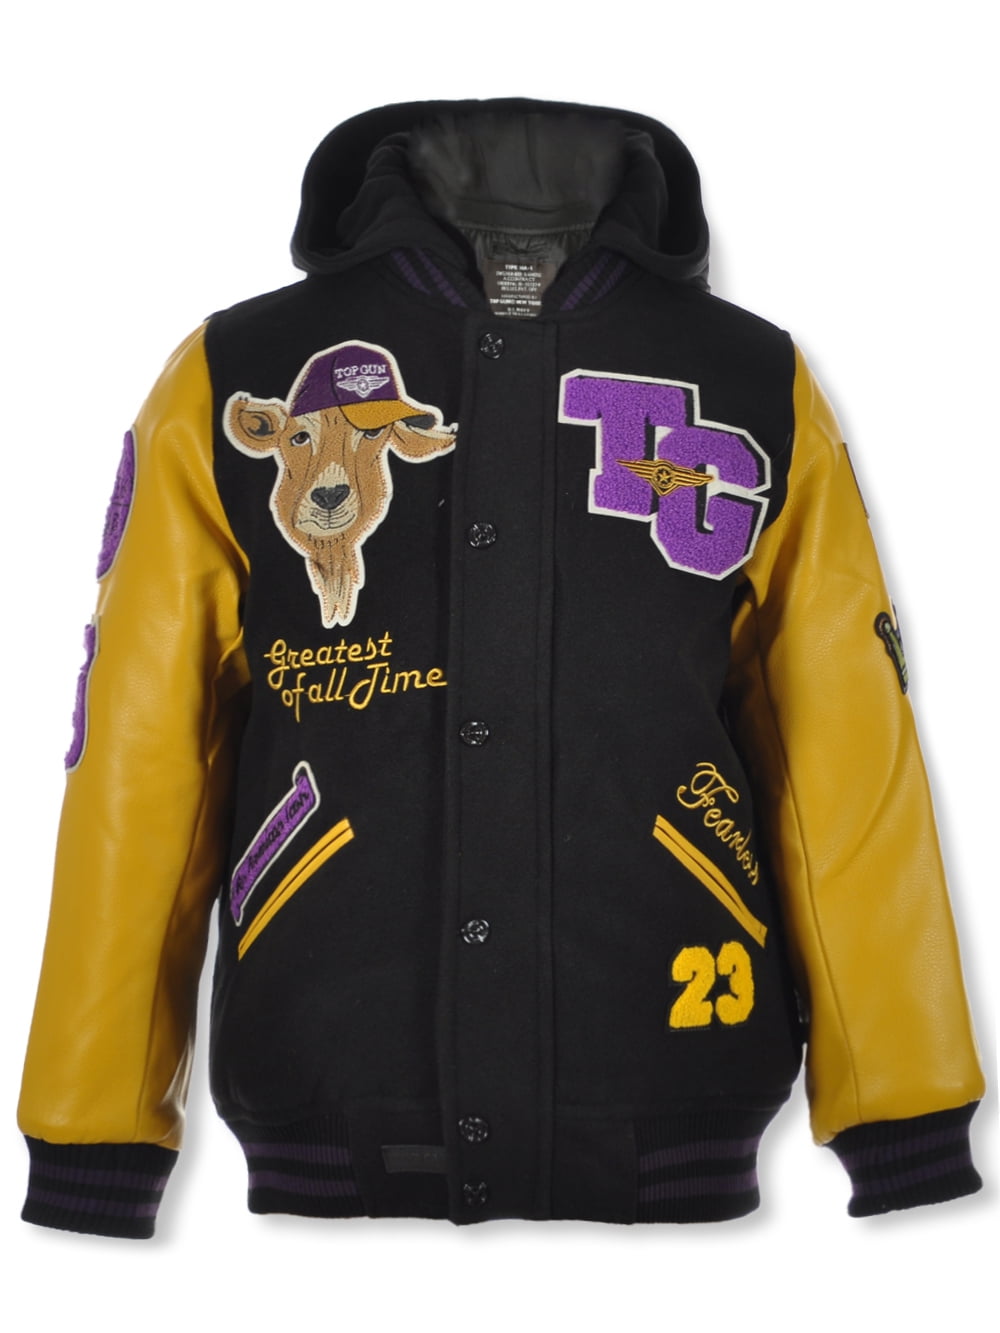 Top Gun Boys\' GOAT Varsity Jacket - yellow/purple, 18 (Big Boys)